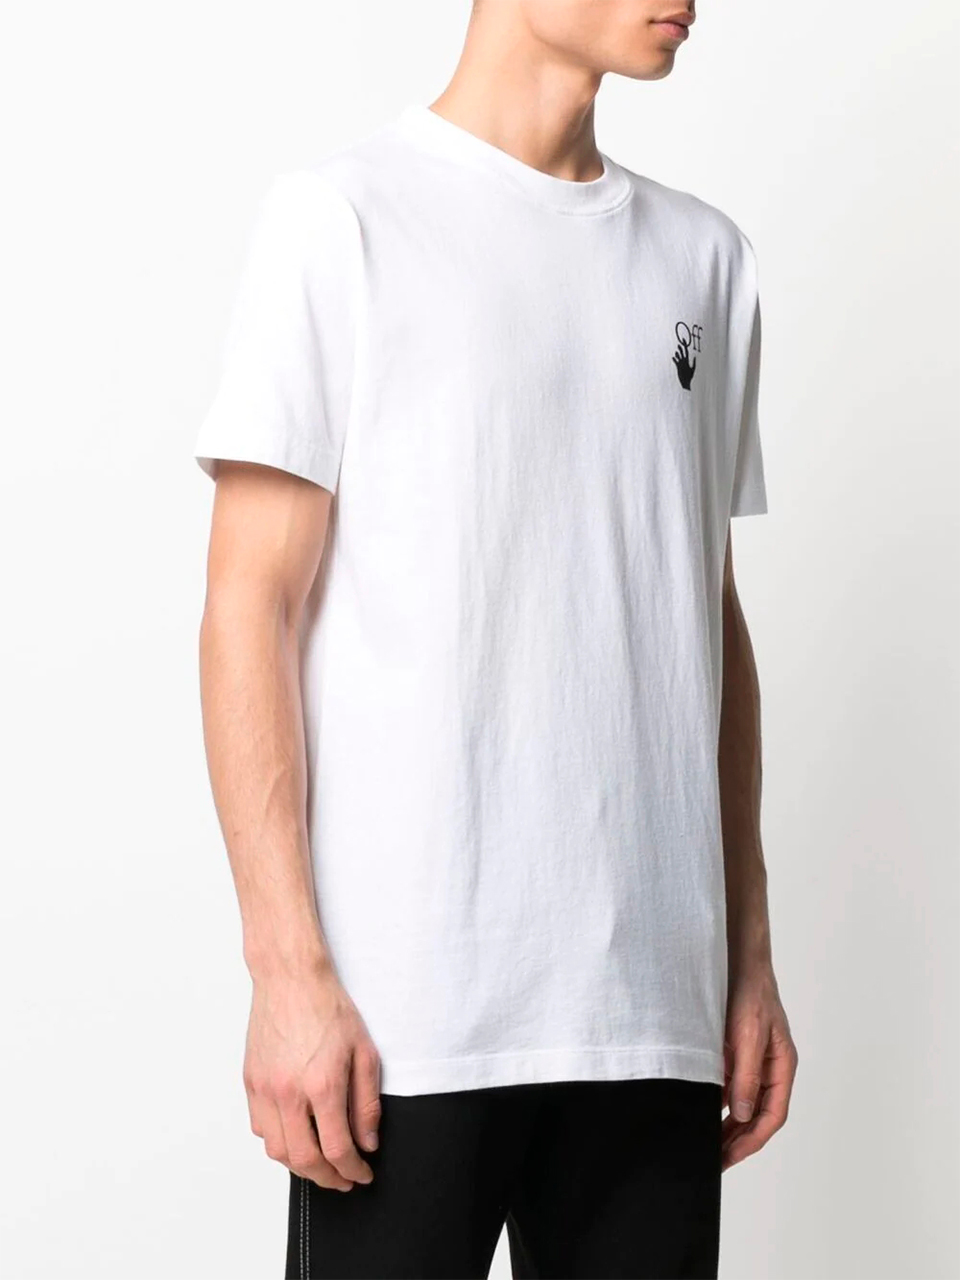 Imagem de: Camiseta Off-White Branca com Estampa Setas Spray